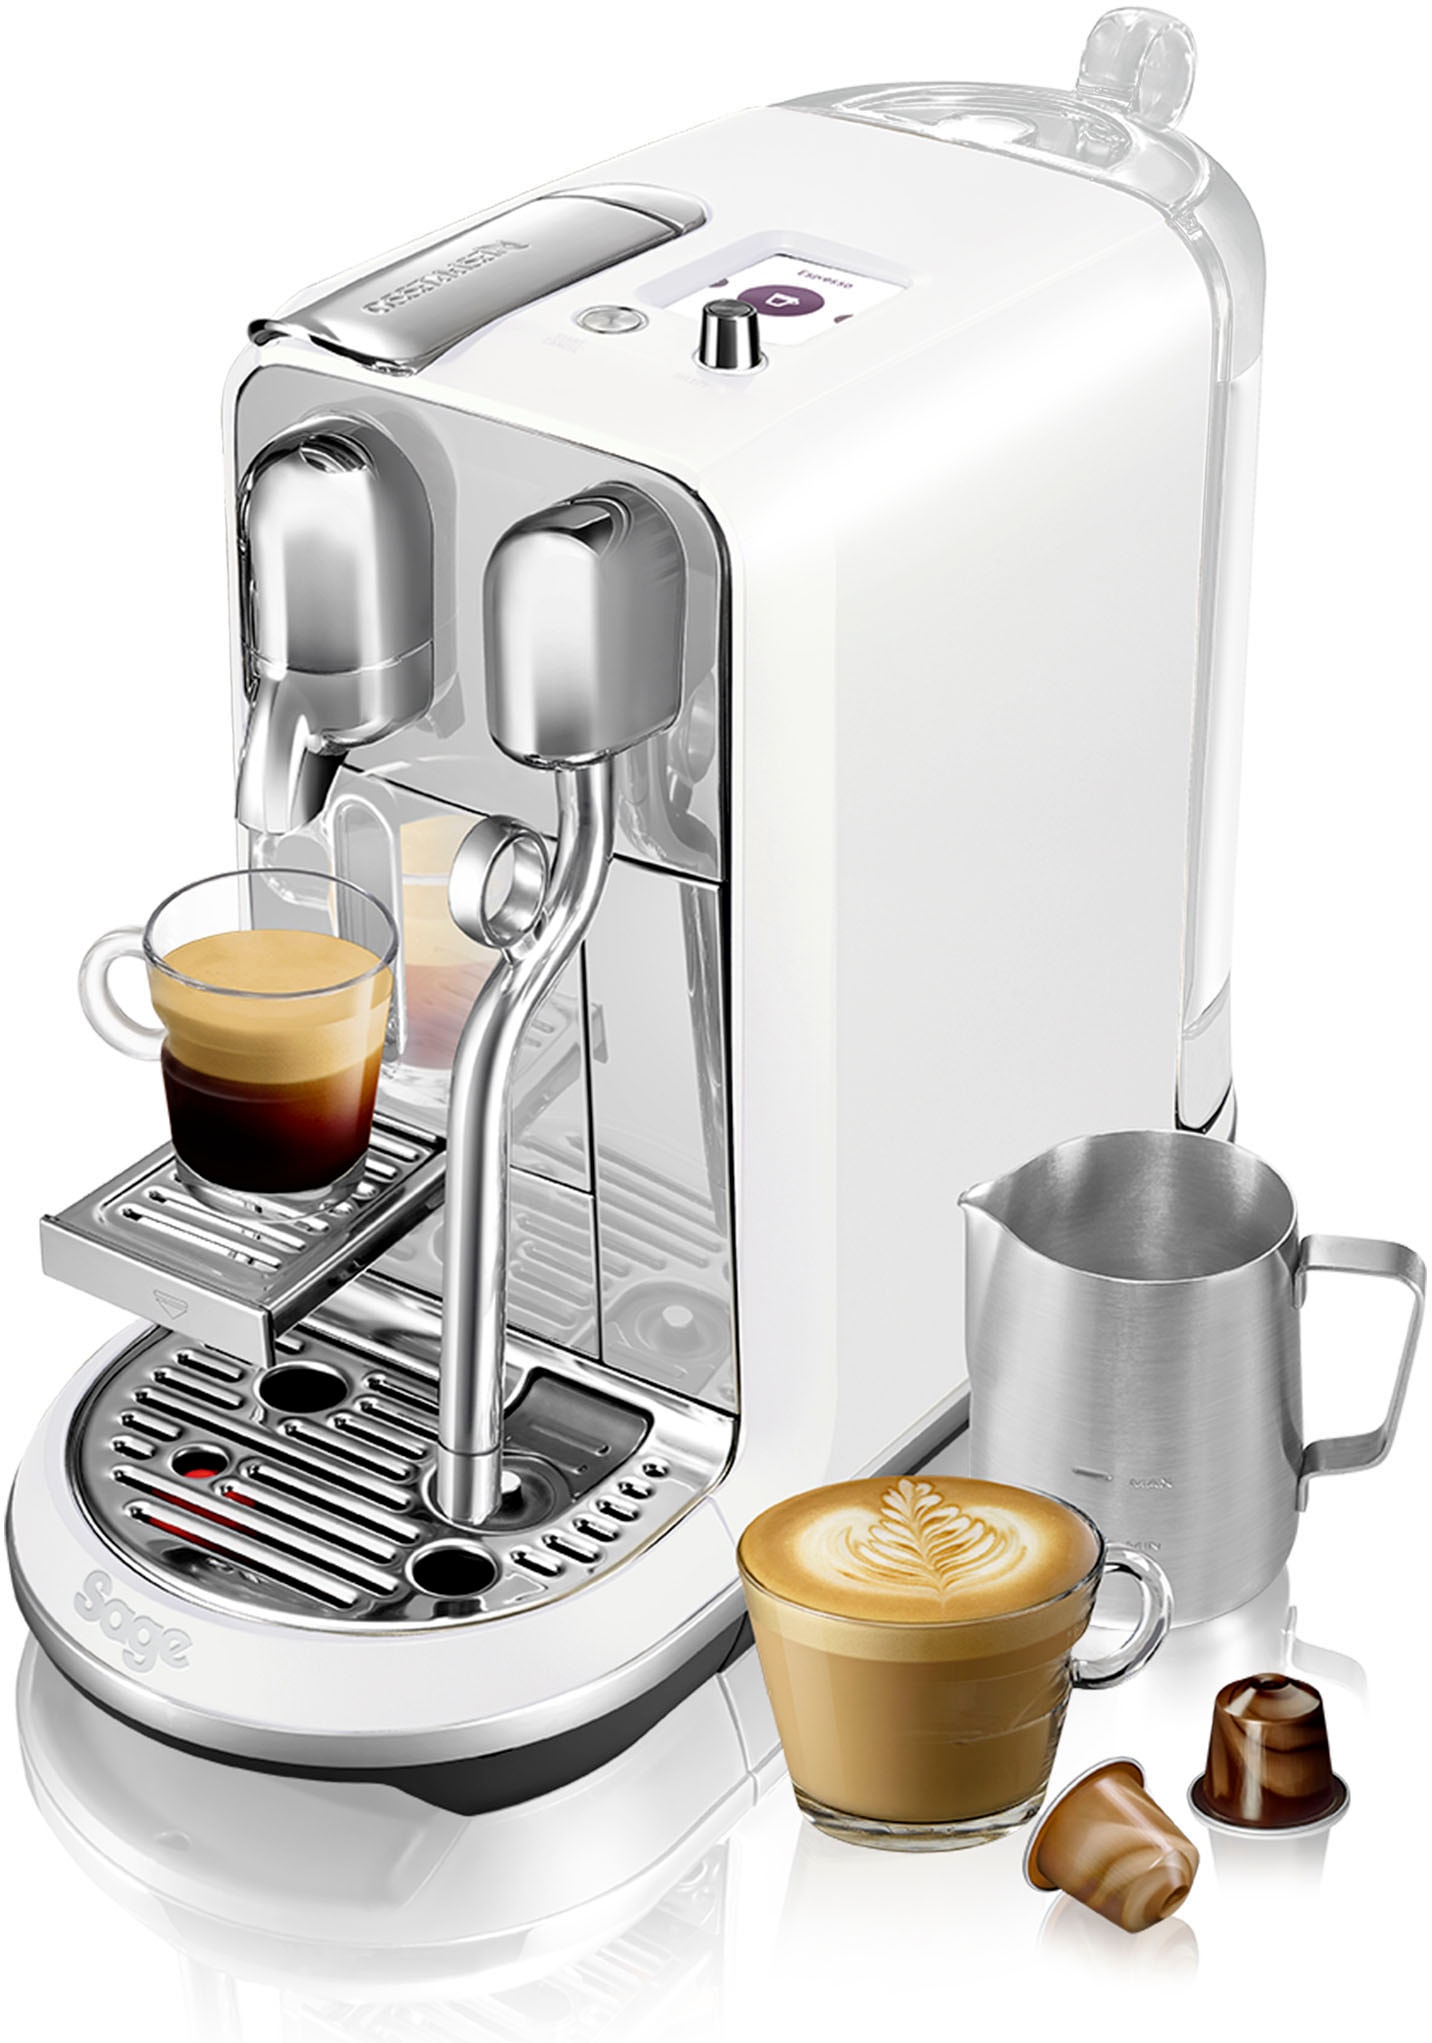 jetzt Nespresso bestellen auf günstig Teilzahlung Kaffeemaschinen